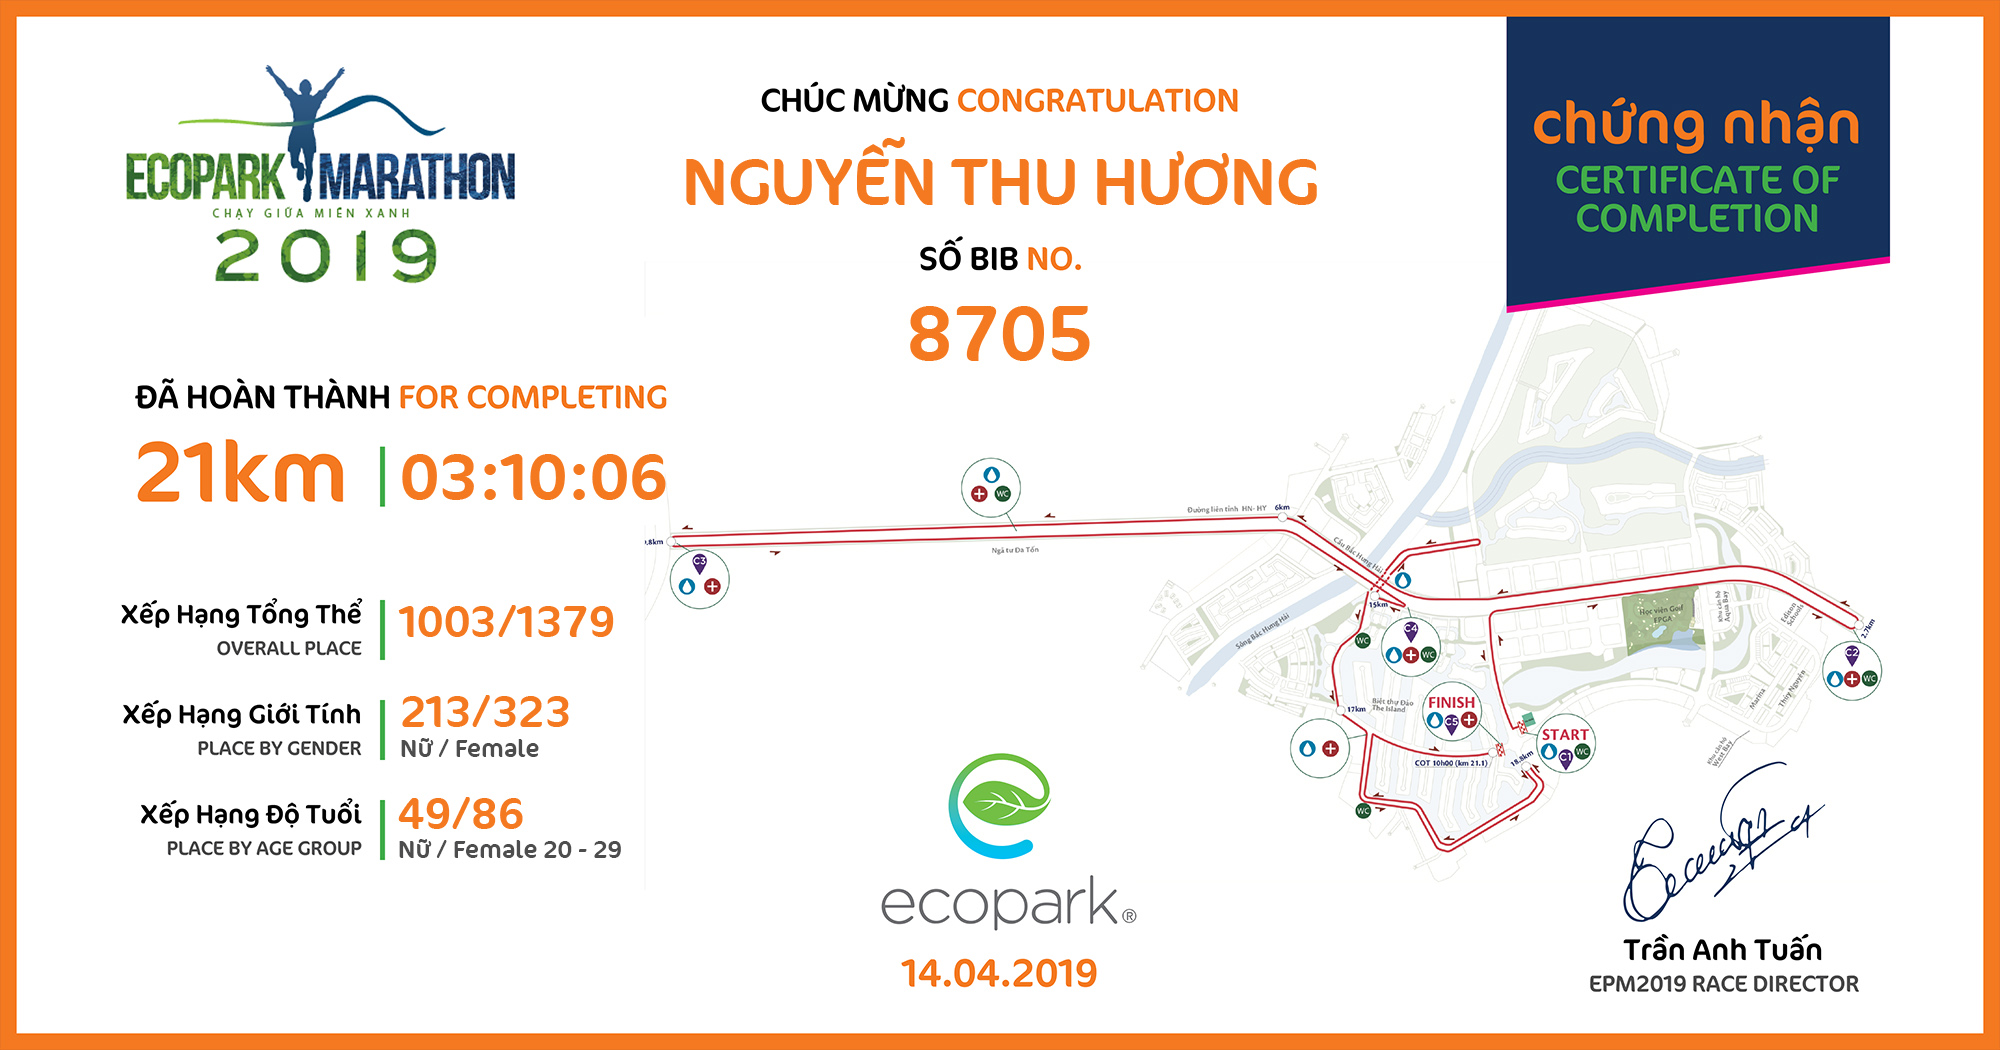 8705 - Nguyễn Thu Hương